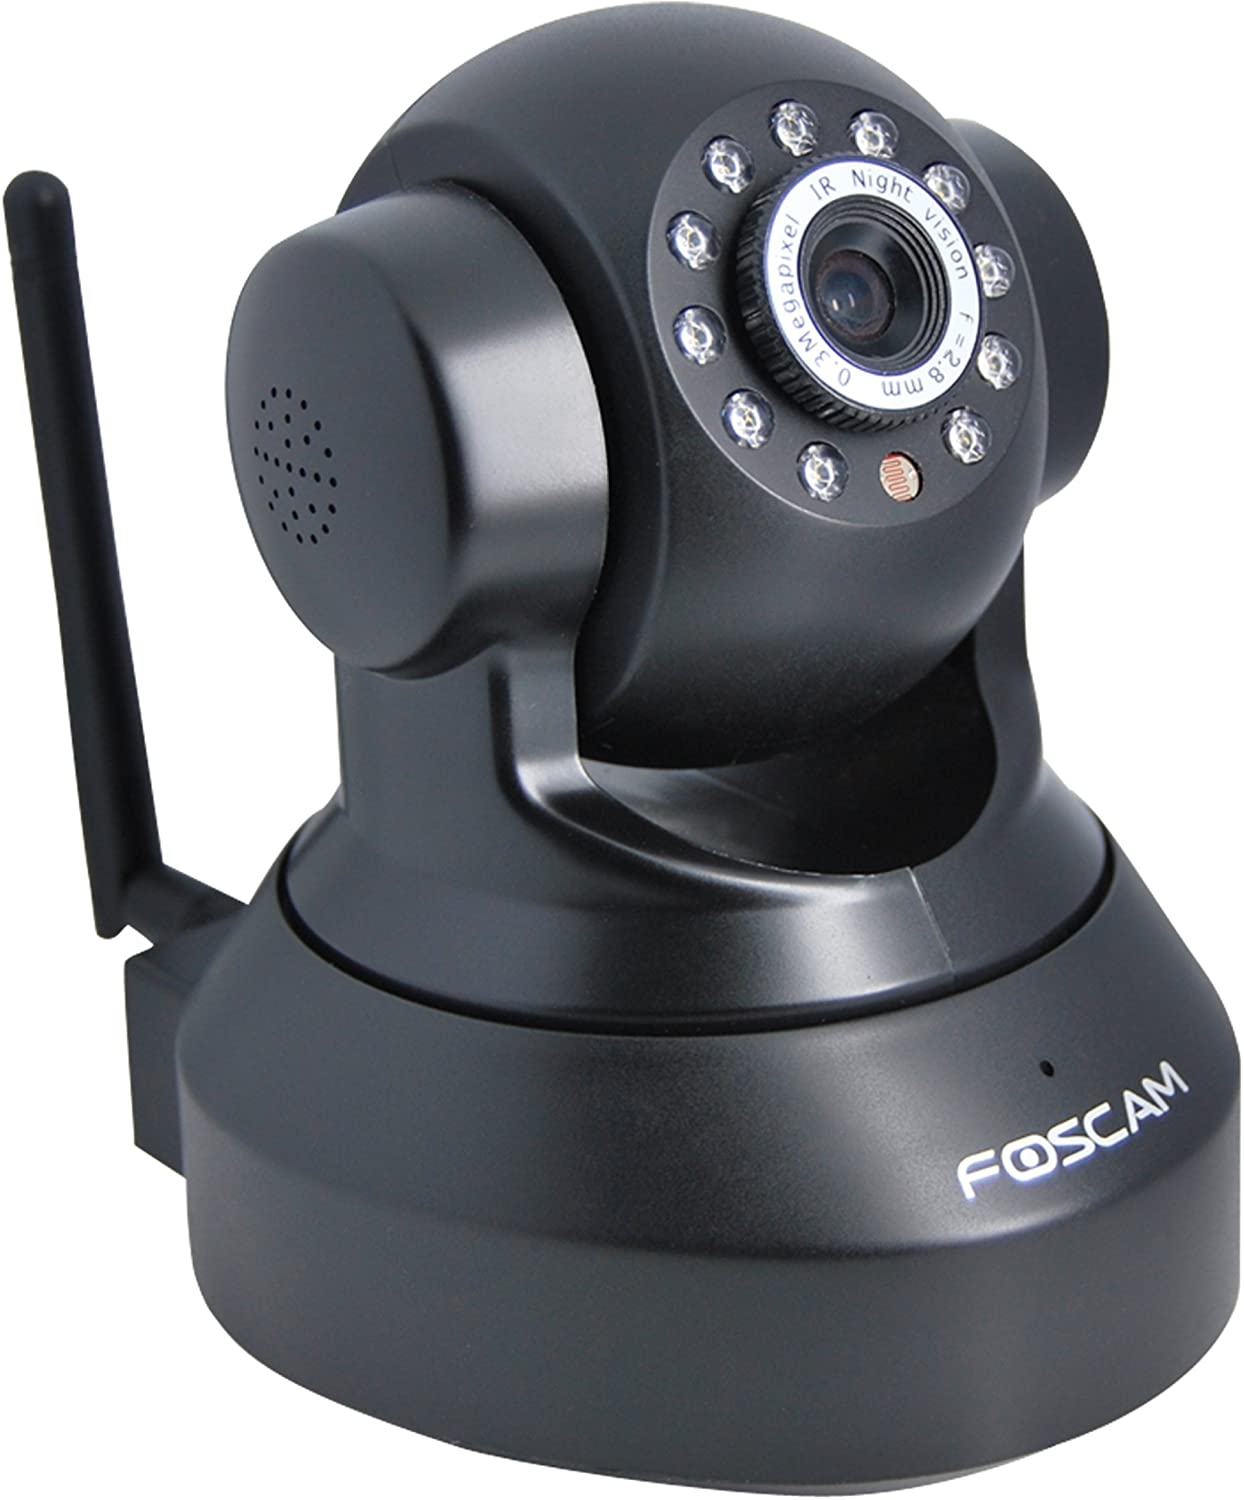 Foscam FI8918W Überwachungskamera